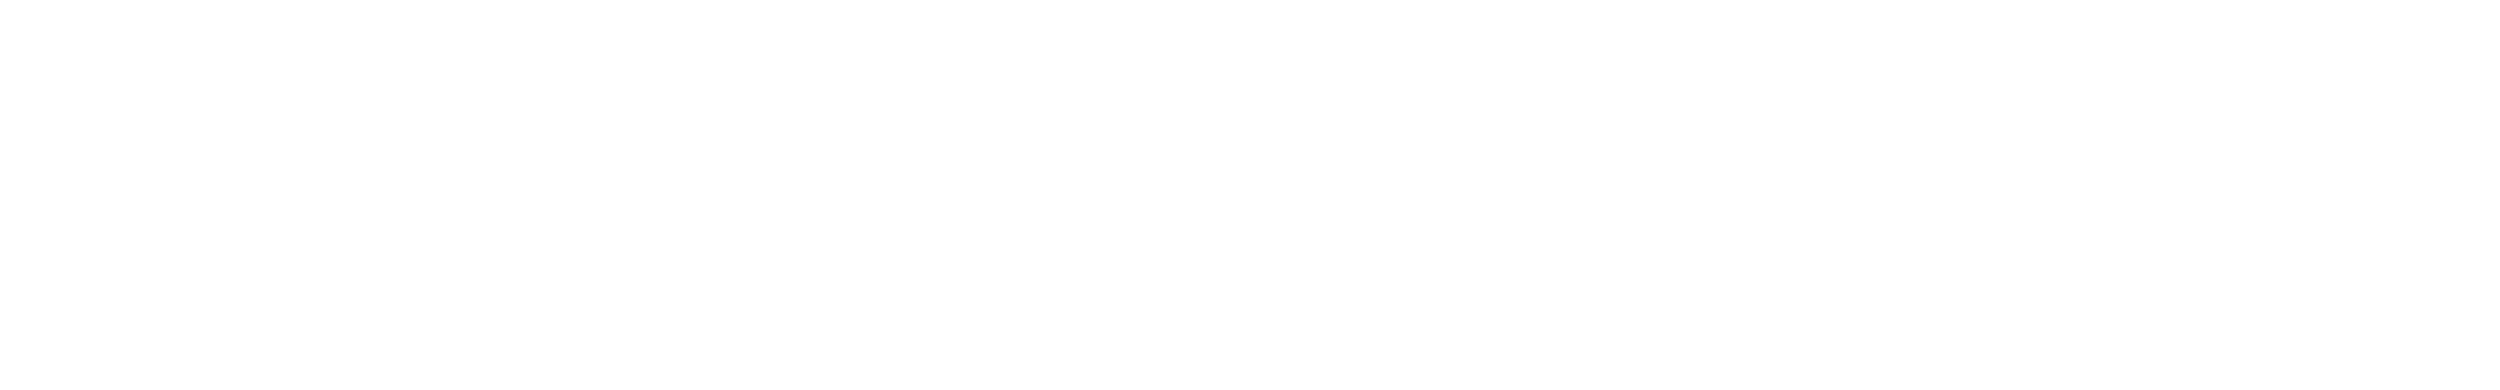 Higginbotham Logo - TM- Inverted.png